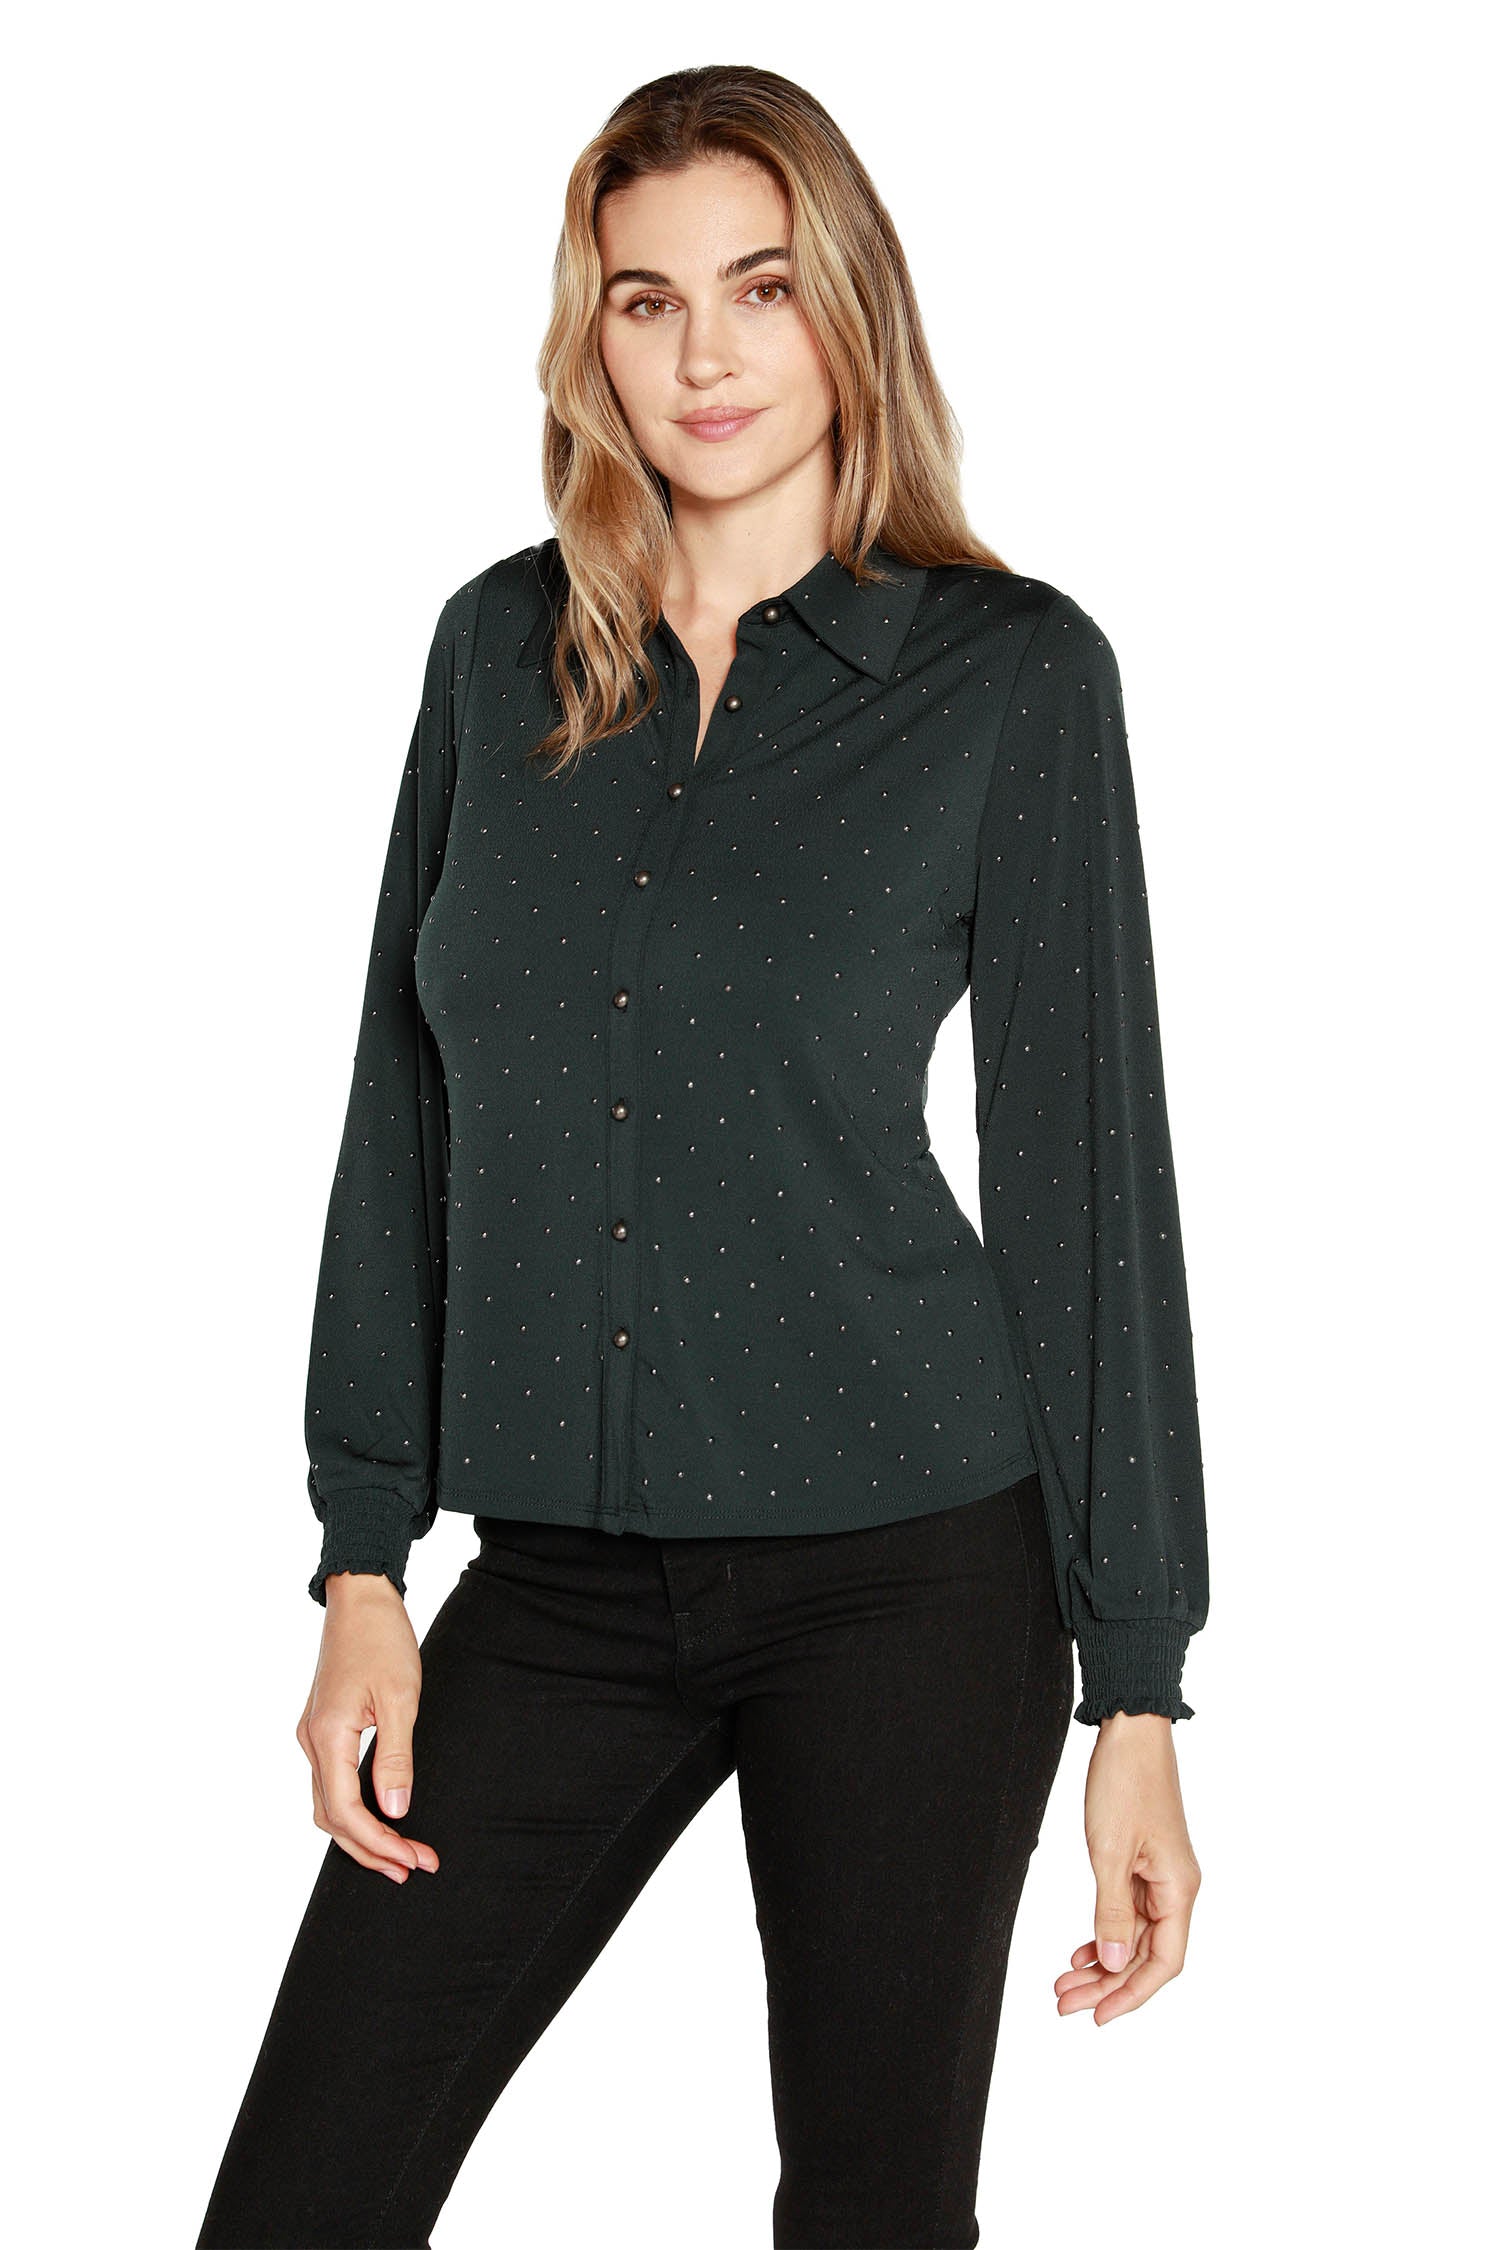 Blusa con botones delanteros y mangas largas tipo blusón para mujer en jersey con estampado de gel metálico